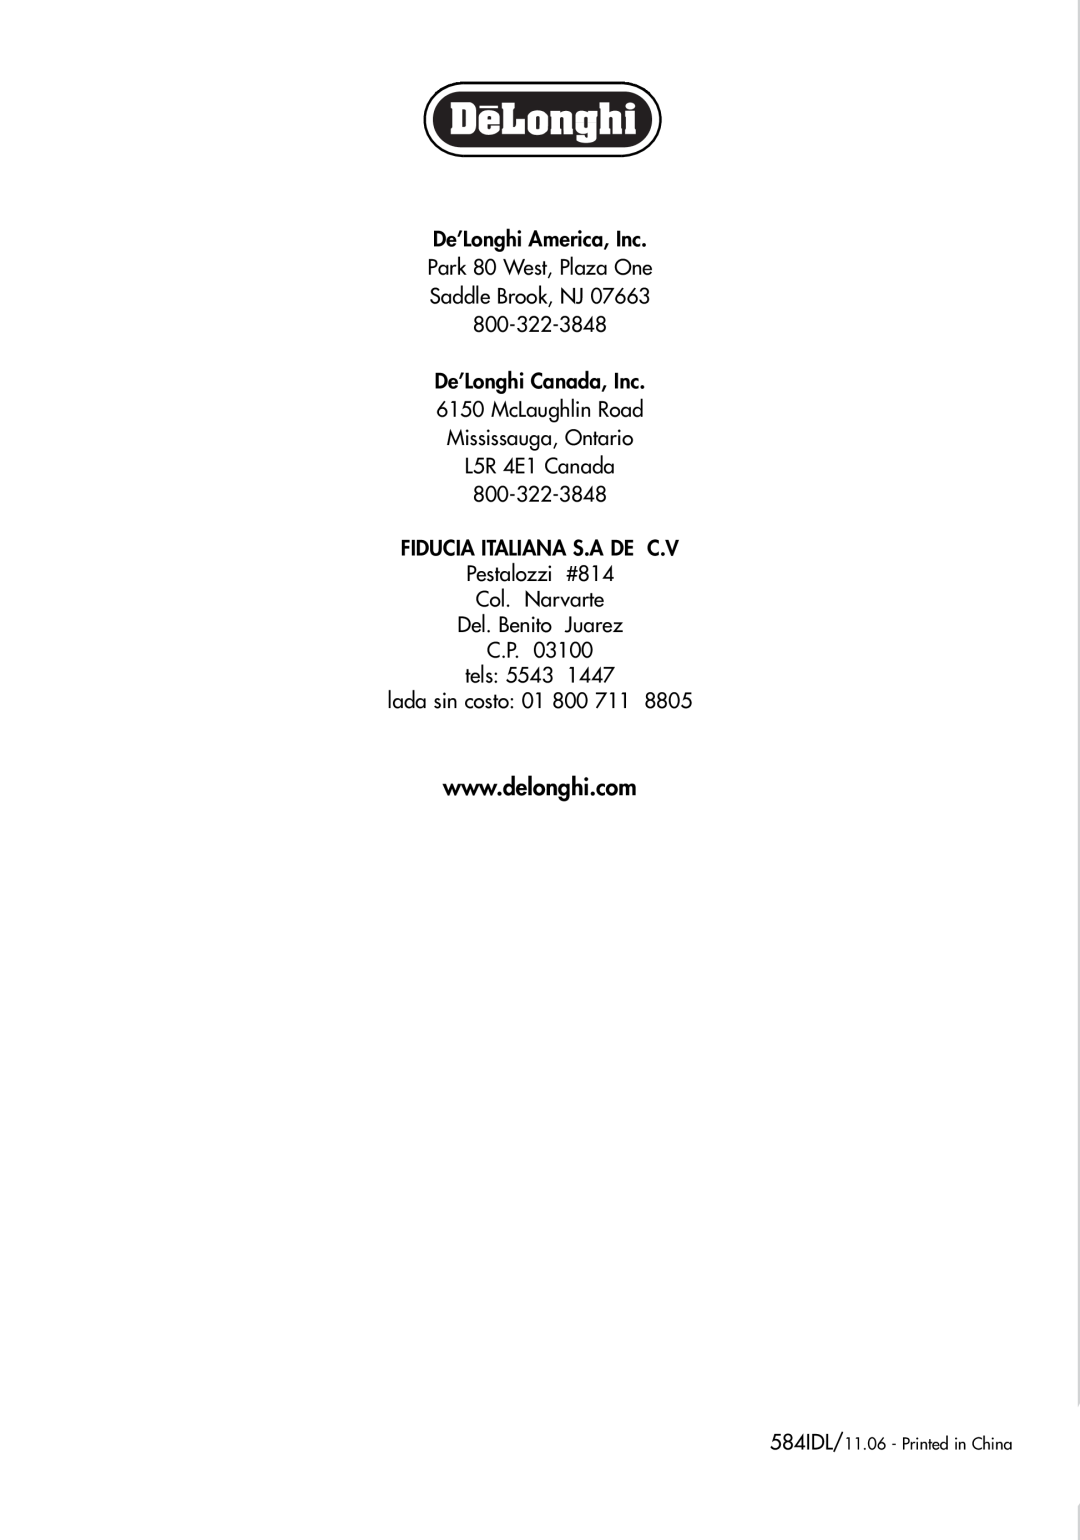 DeLonghi DCU500T manual De’Longhi America, Inc Park 80 West, Plaza One, Saddle Brook, NJ, lada sin costo 